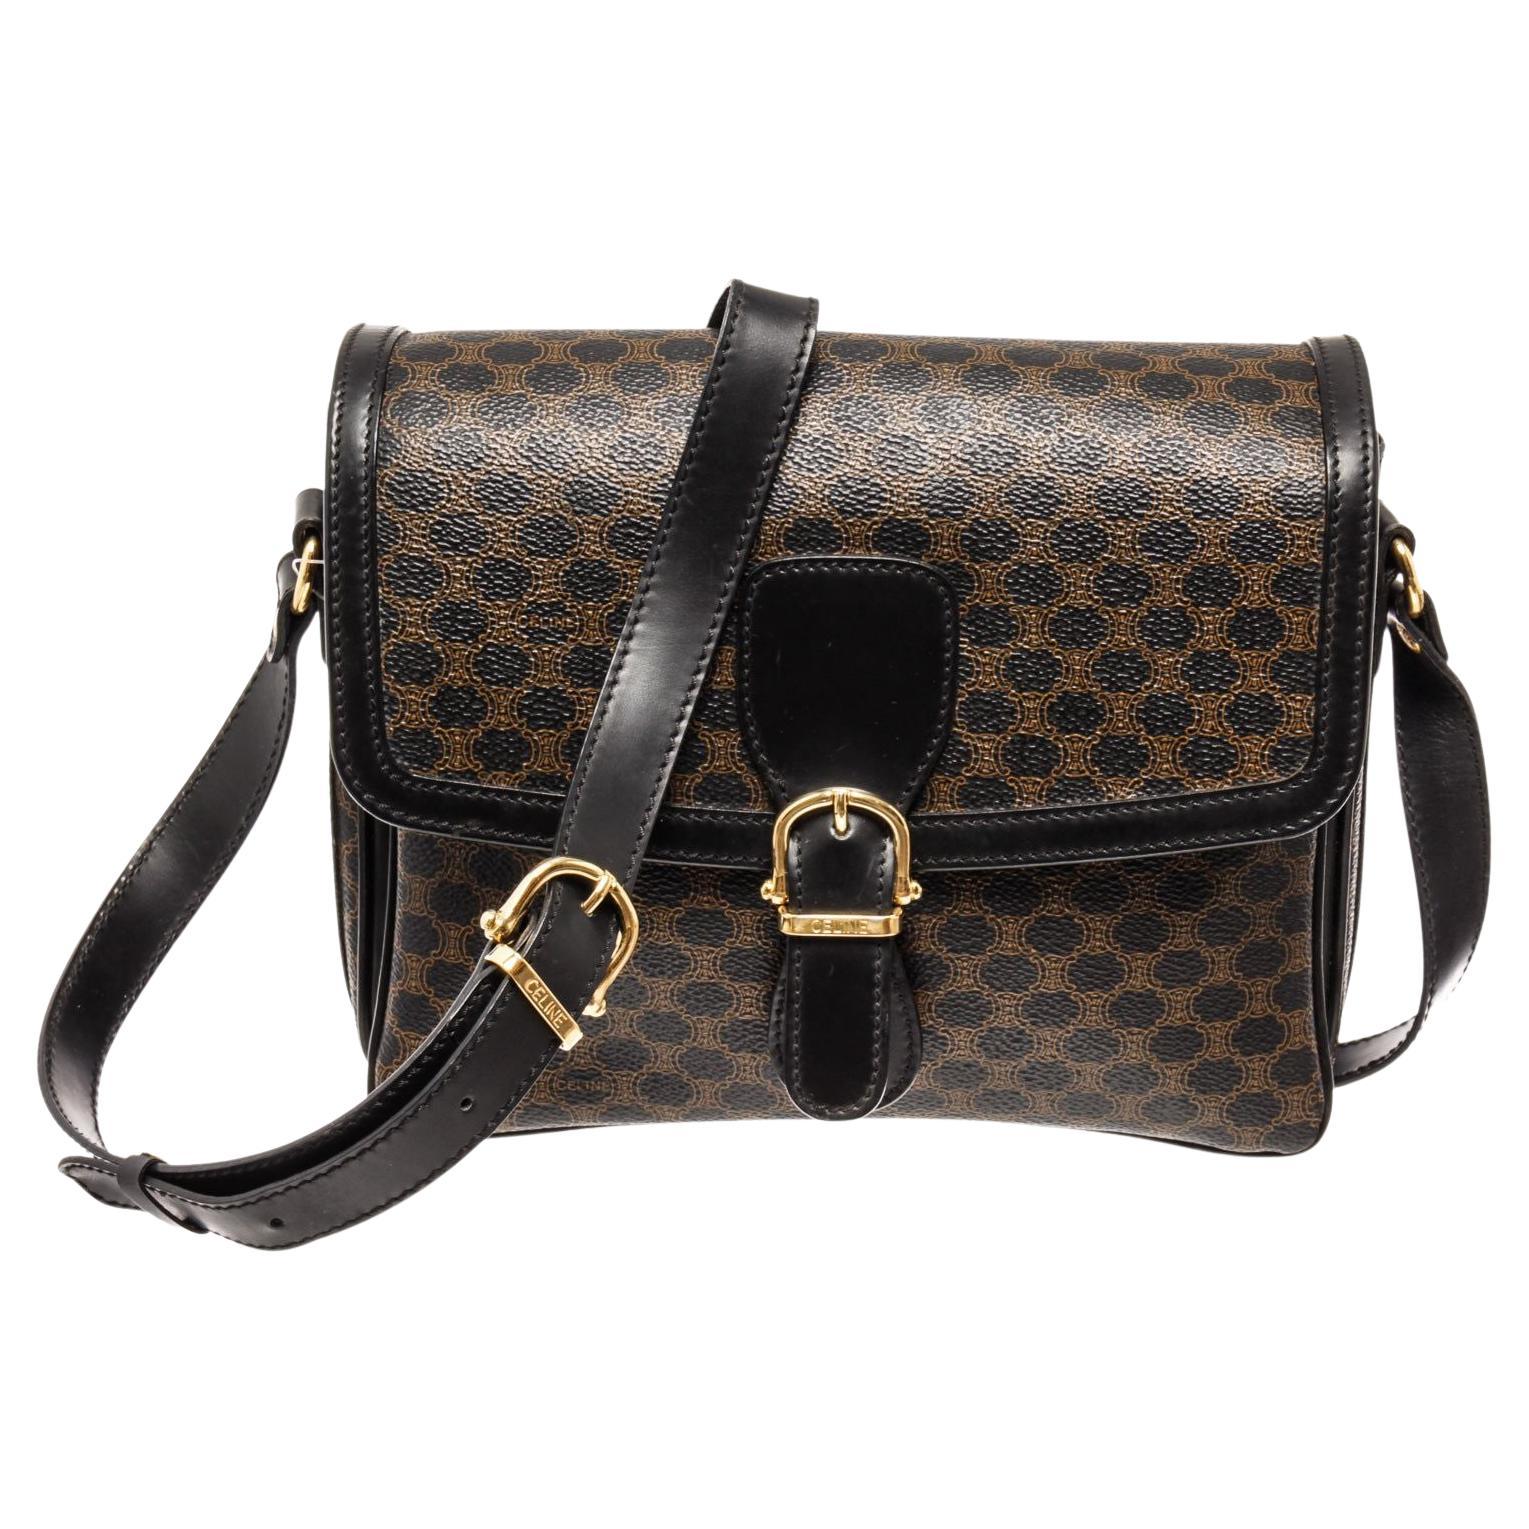 Black leather Macadam pattern Celine shoulder bag with gold-tone hardware